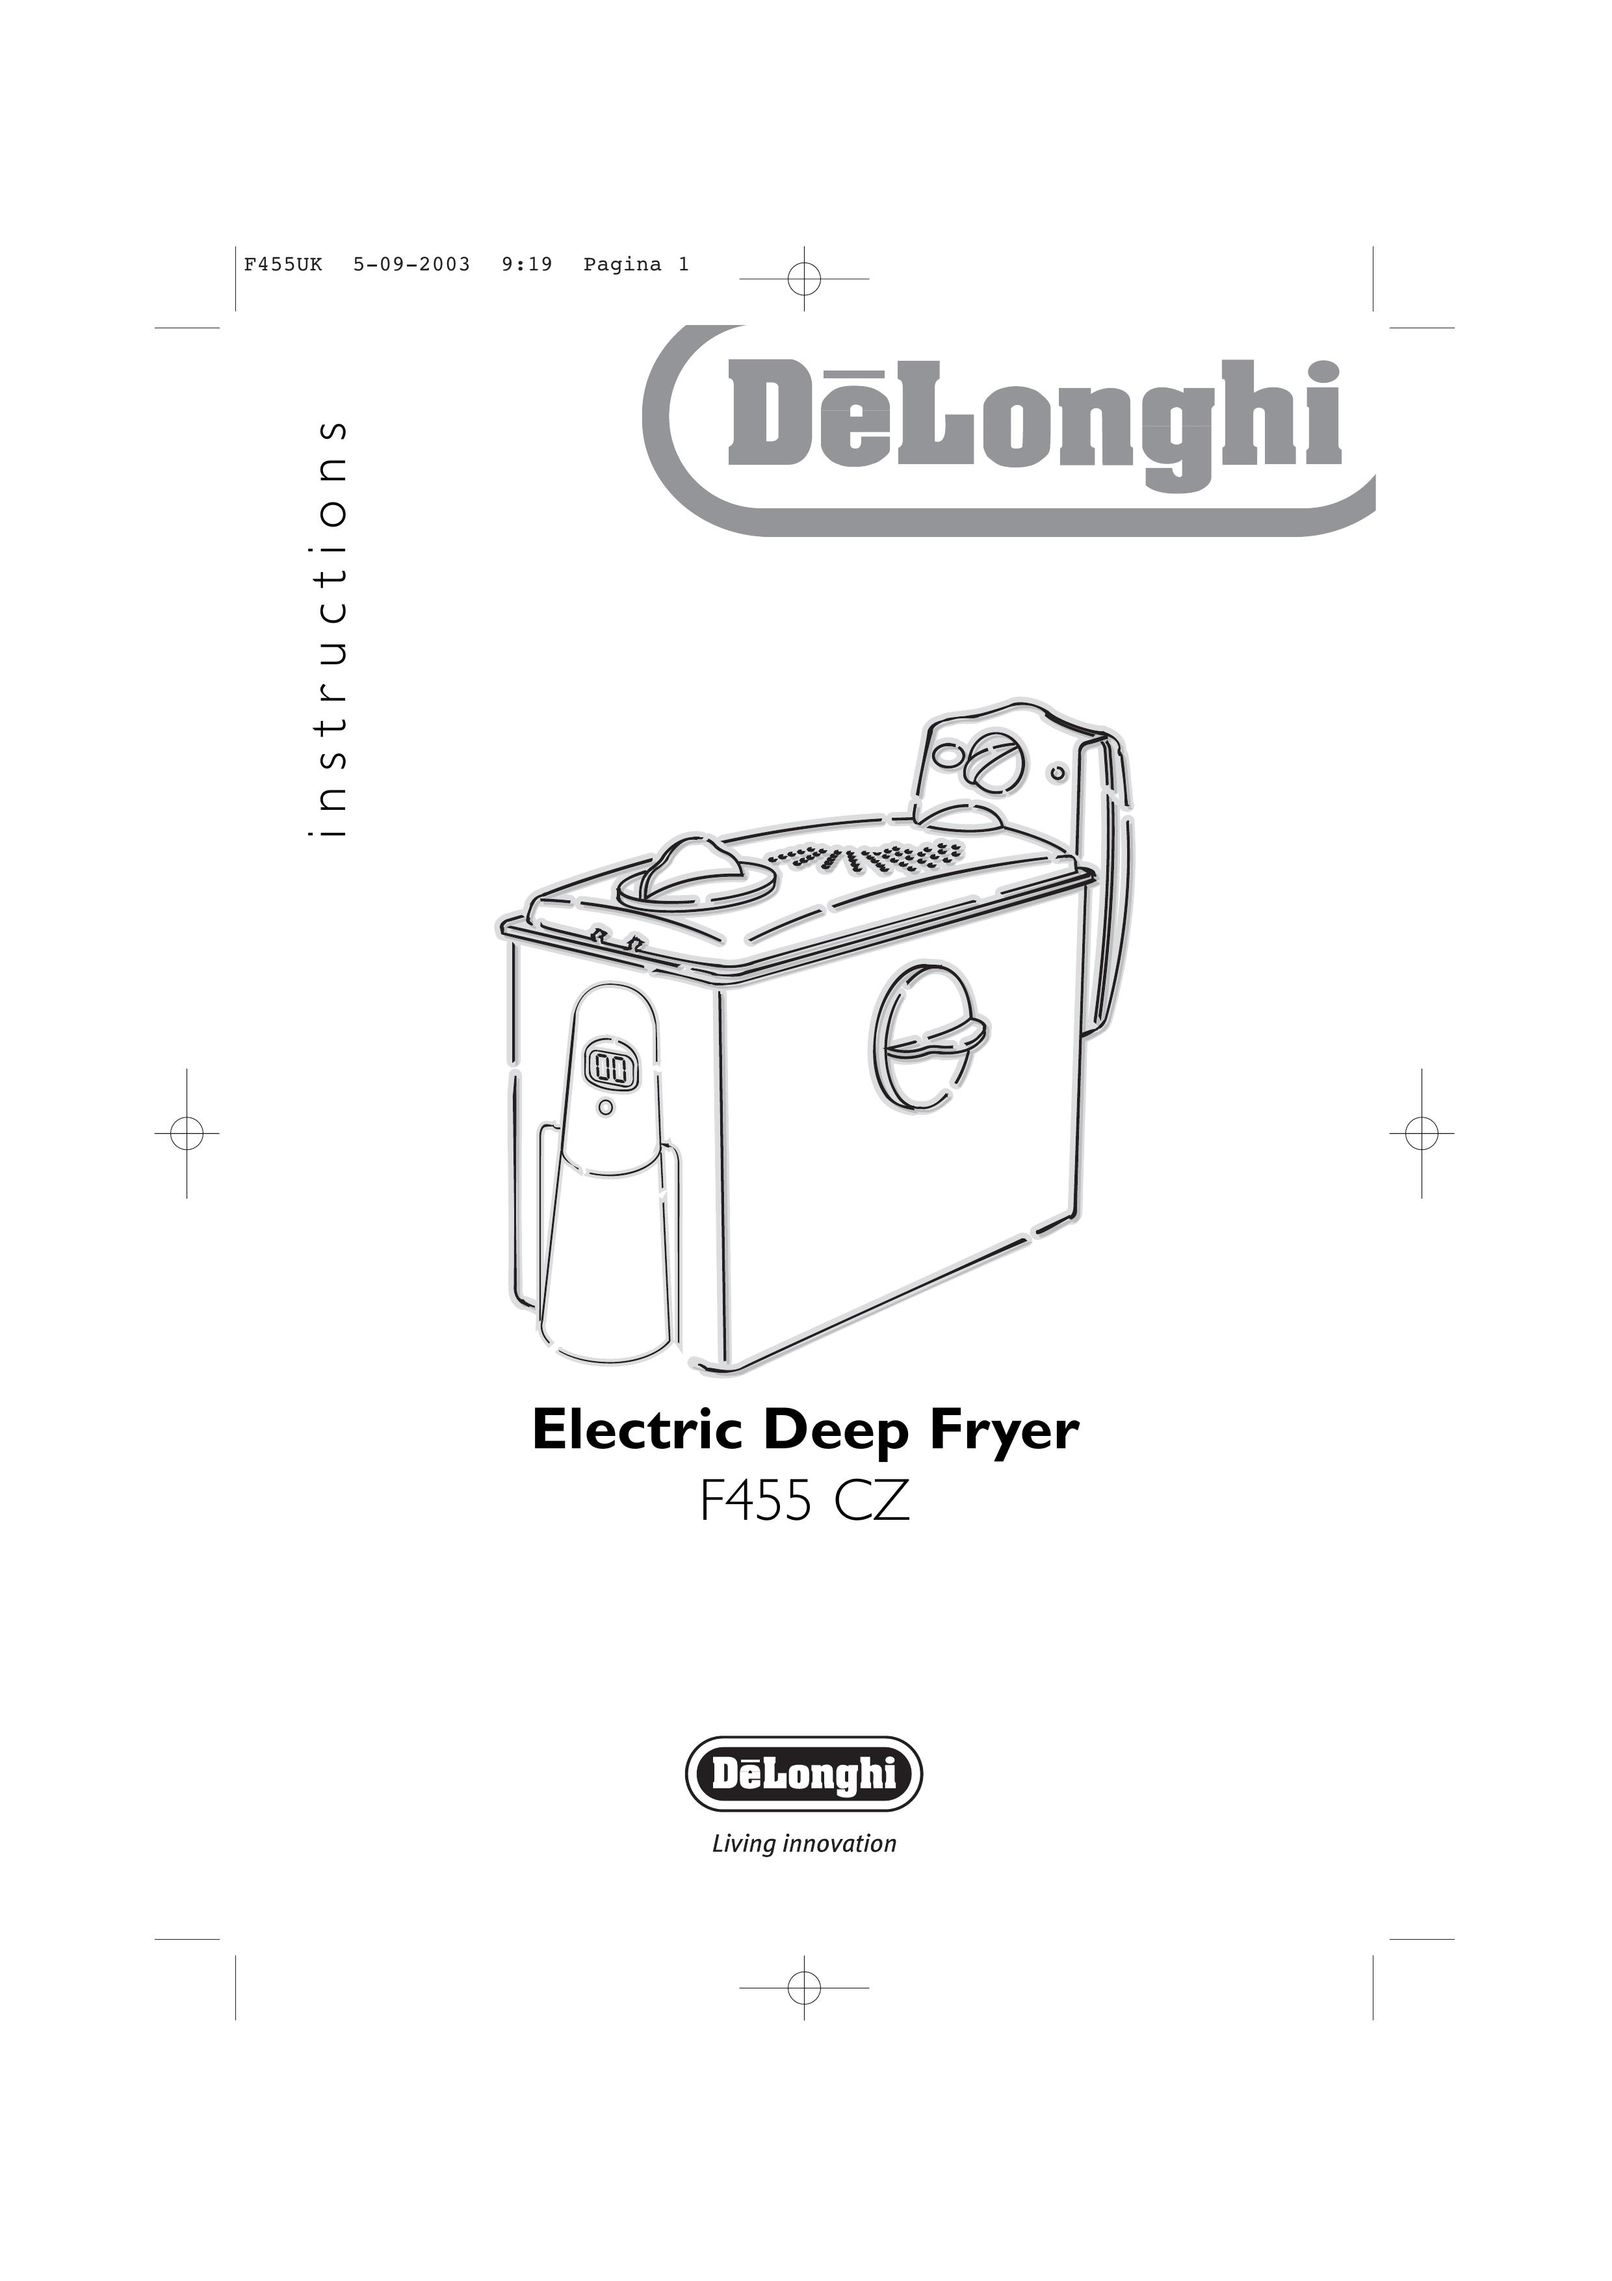 DeLonghi F455 CZ Fryer User Manual